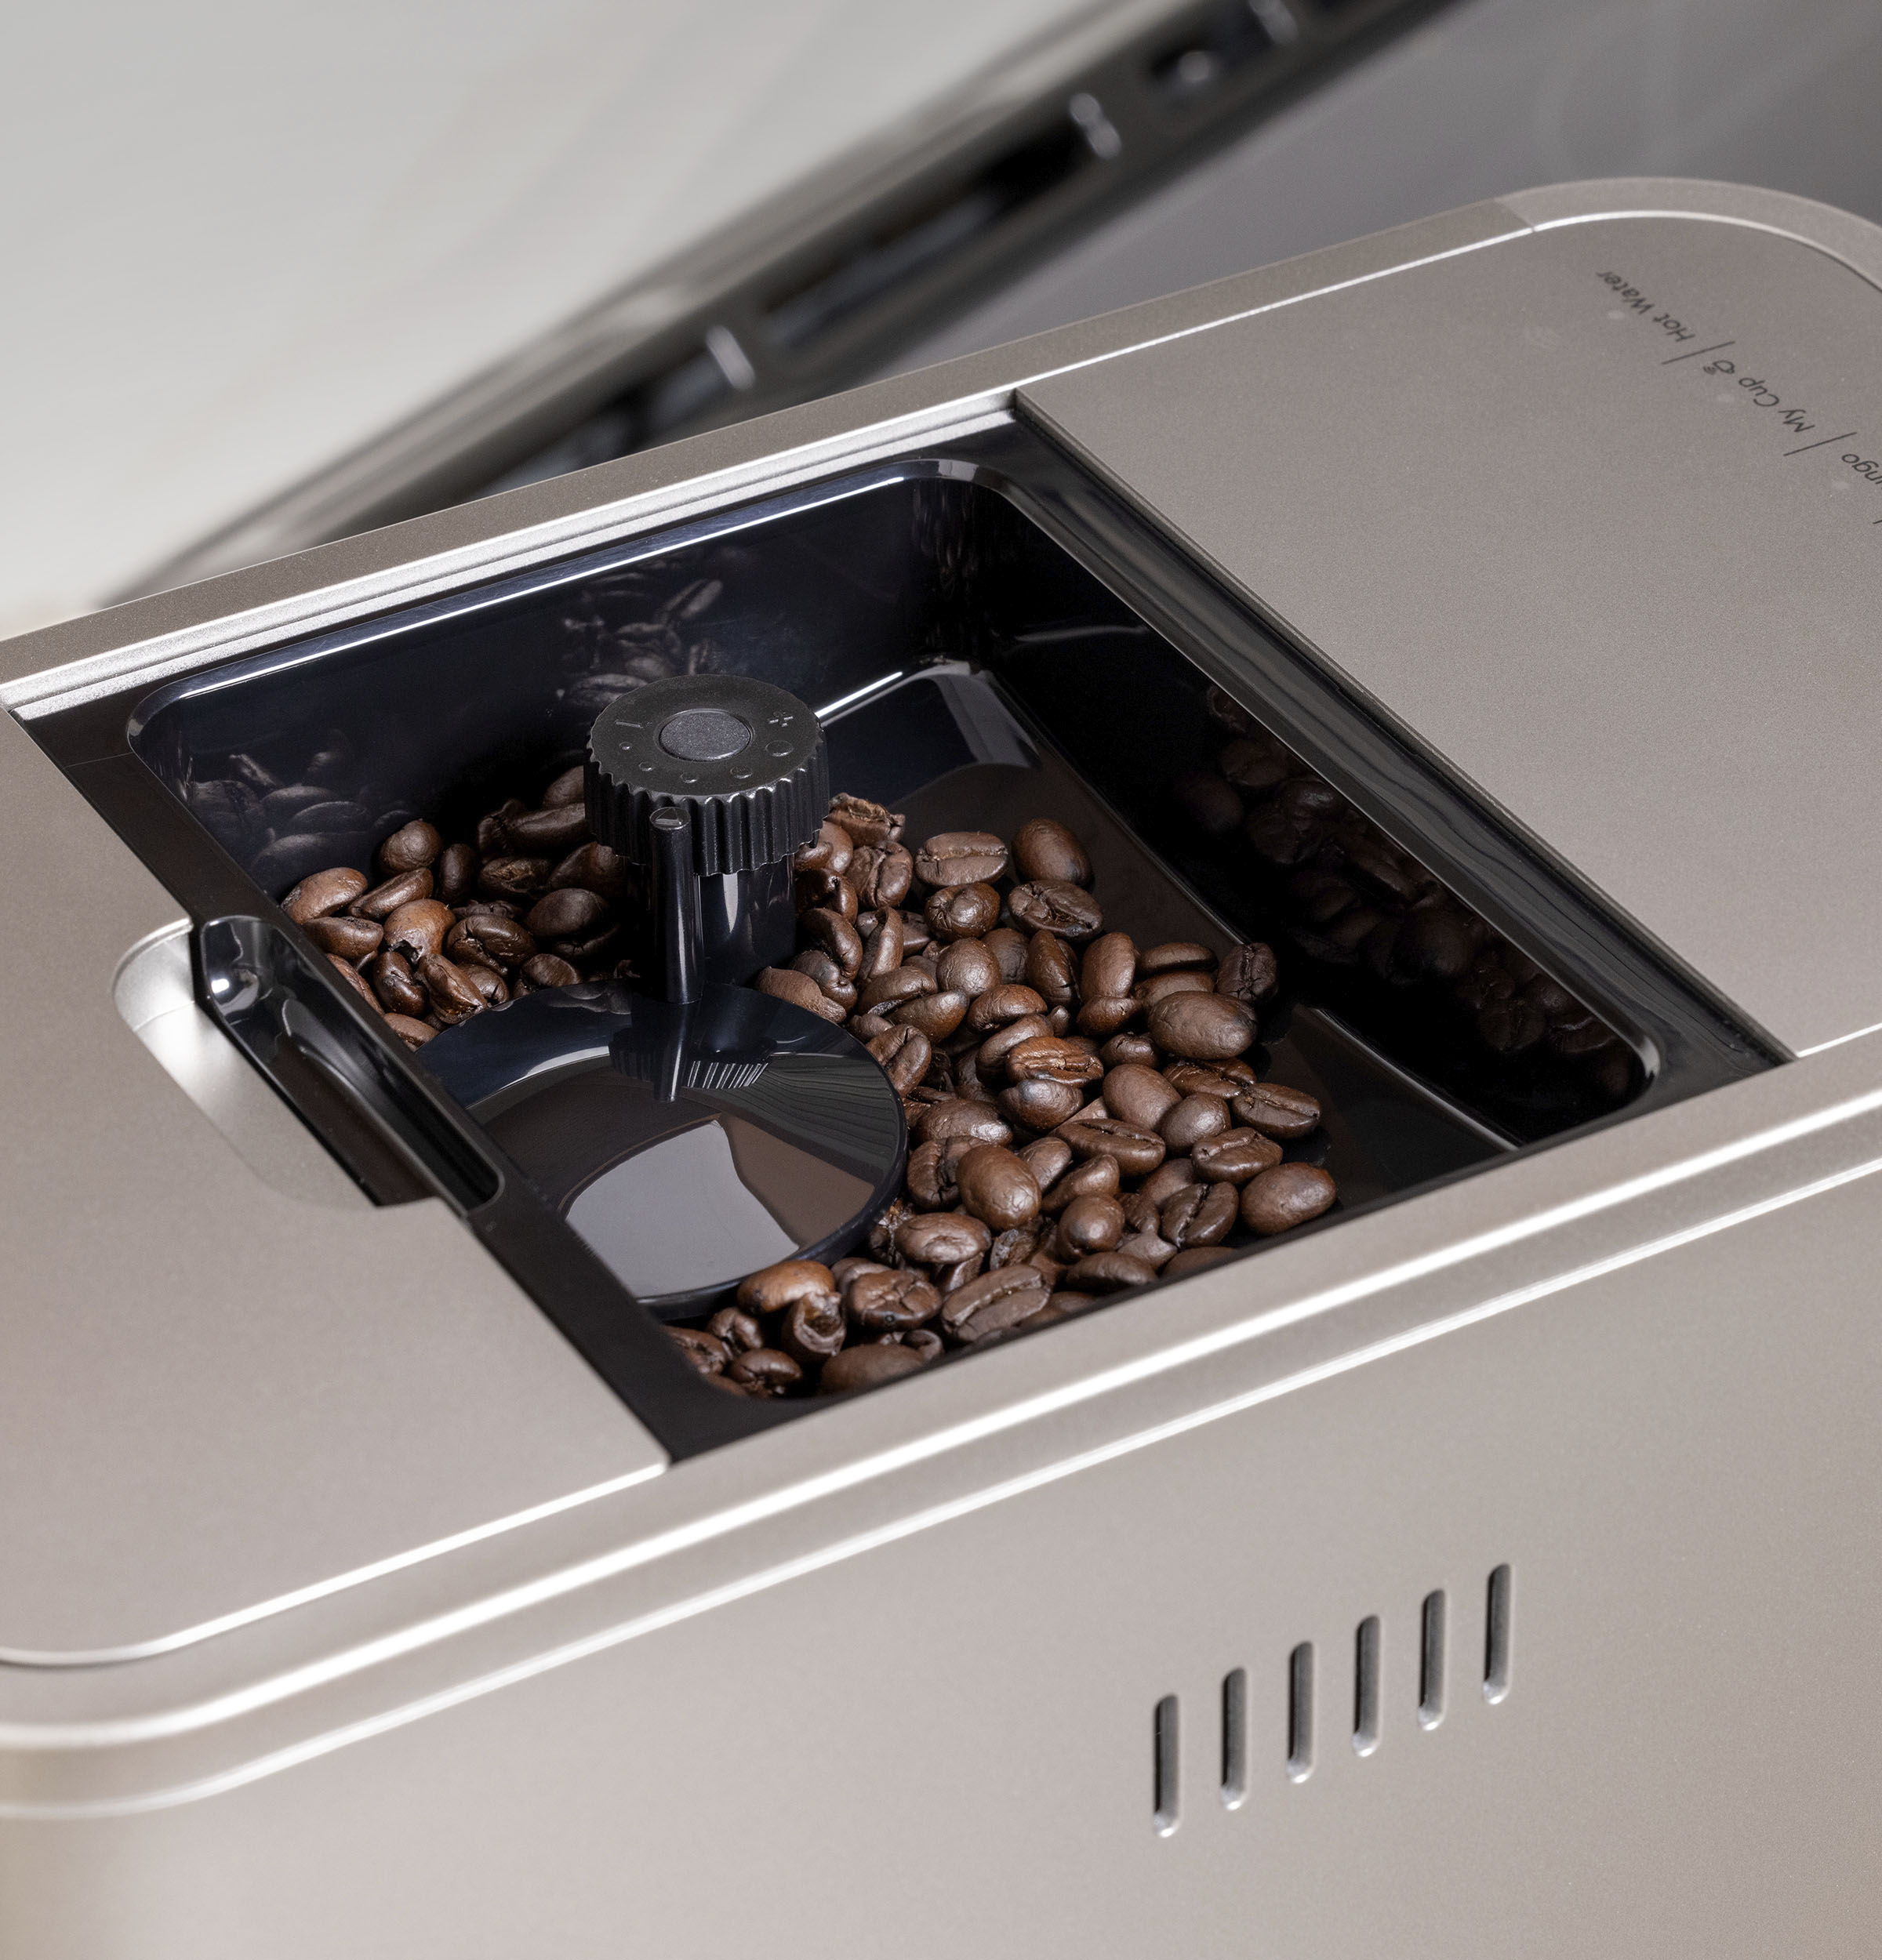 Café grain pour machine expresso automatique